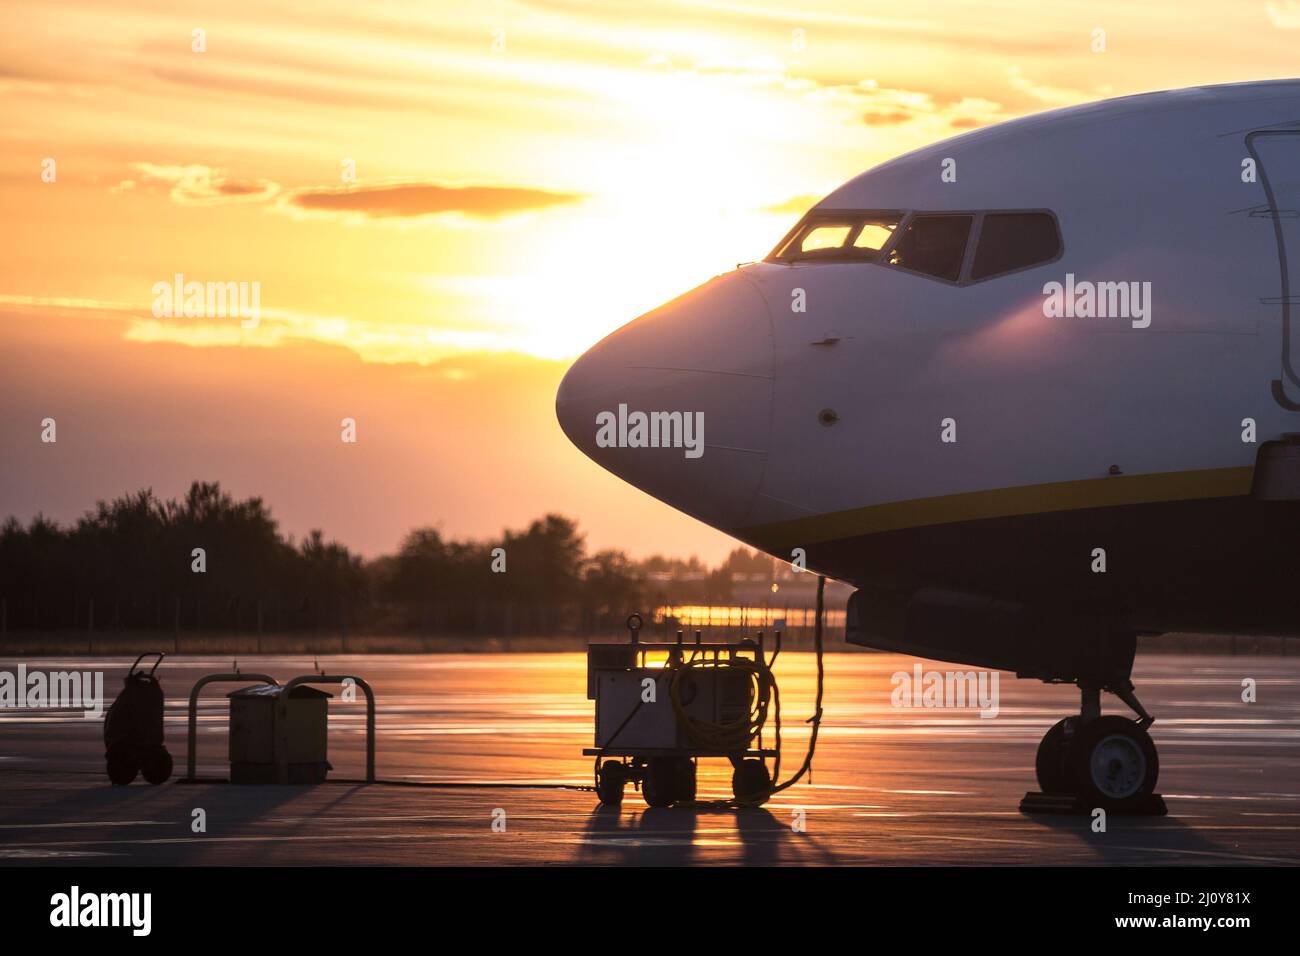 Vue latérale de l'avion en stationnement rétroéclairé, heure du coucher du soleil. Avion à réaction commercial à corps étroit Banque D'Images